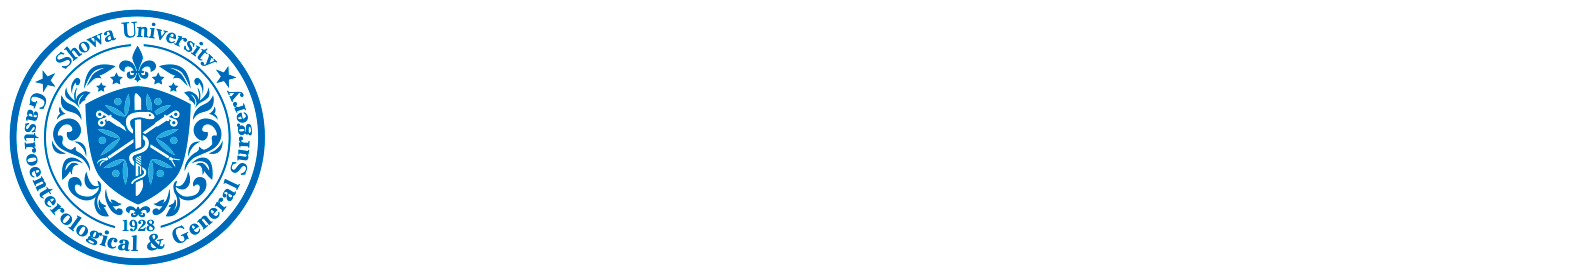 昭和大学医学部 外科学講座 消化器・一般外科部門